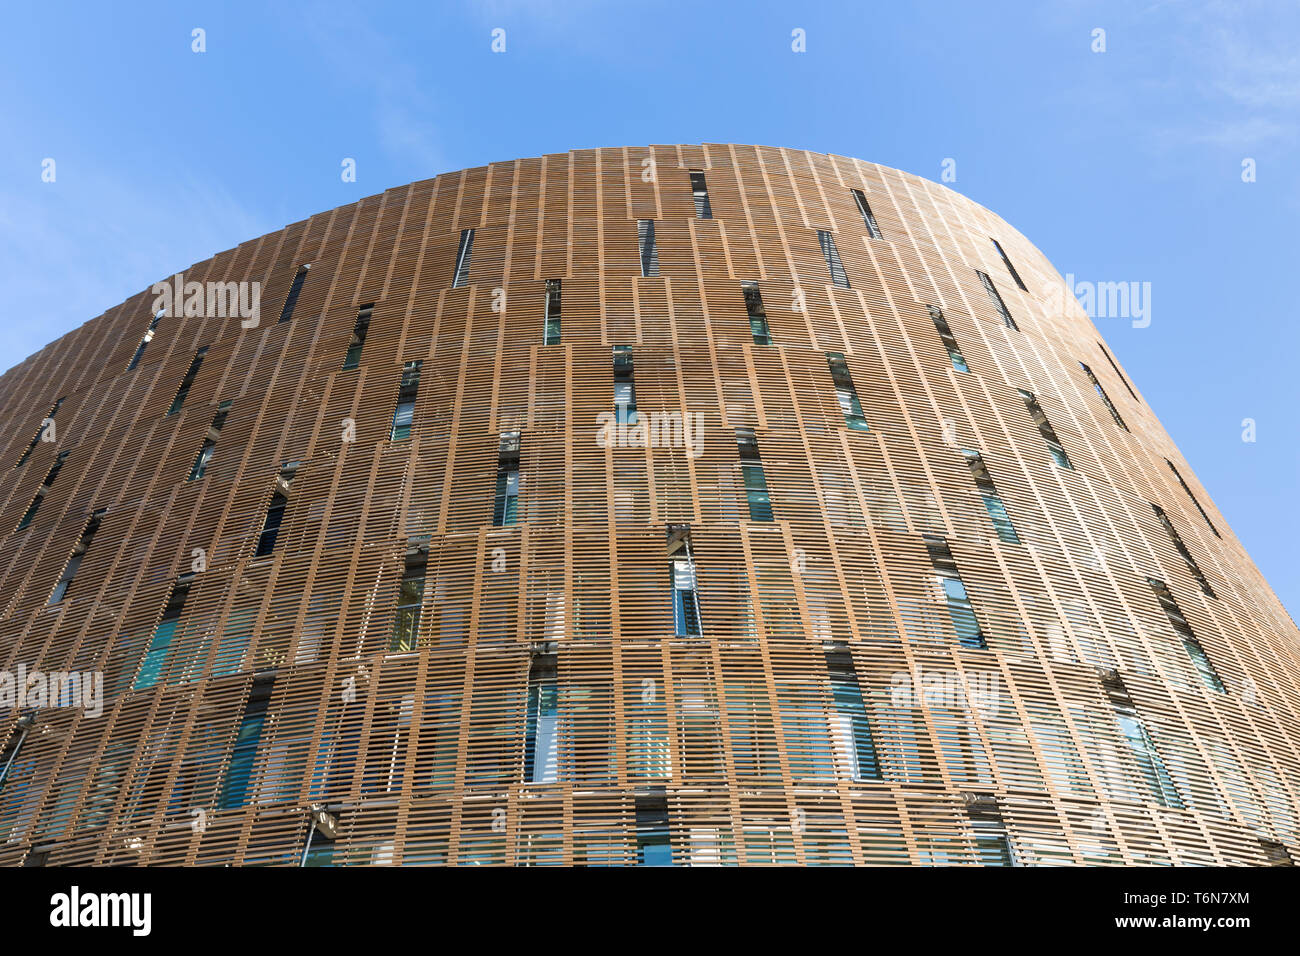 Fachada de edificio moderno en Barcelona, España Foto de stock